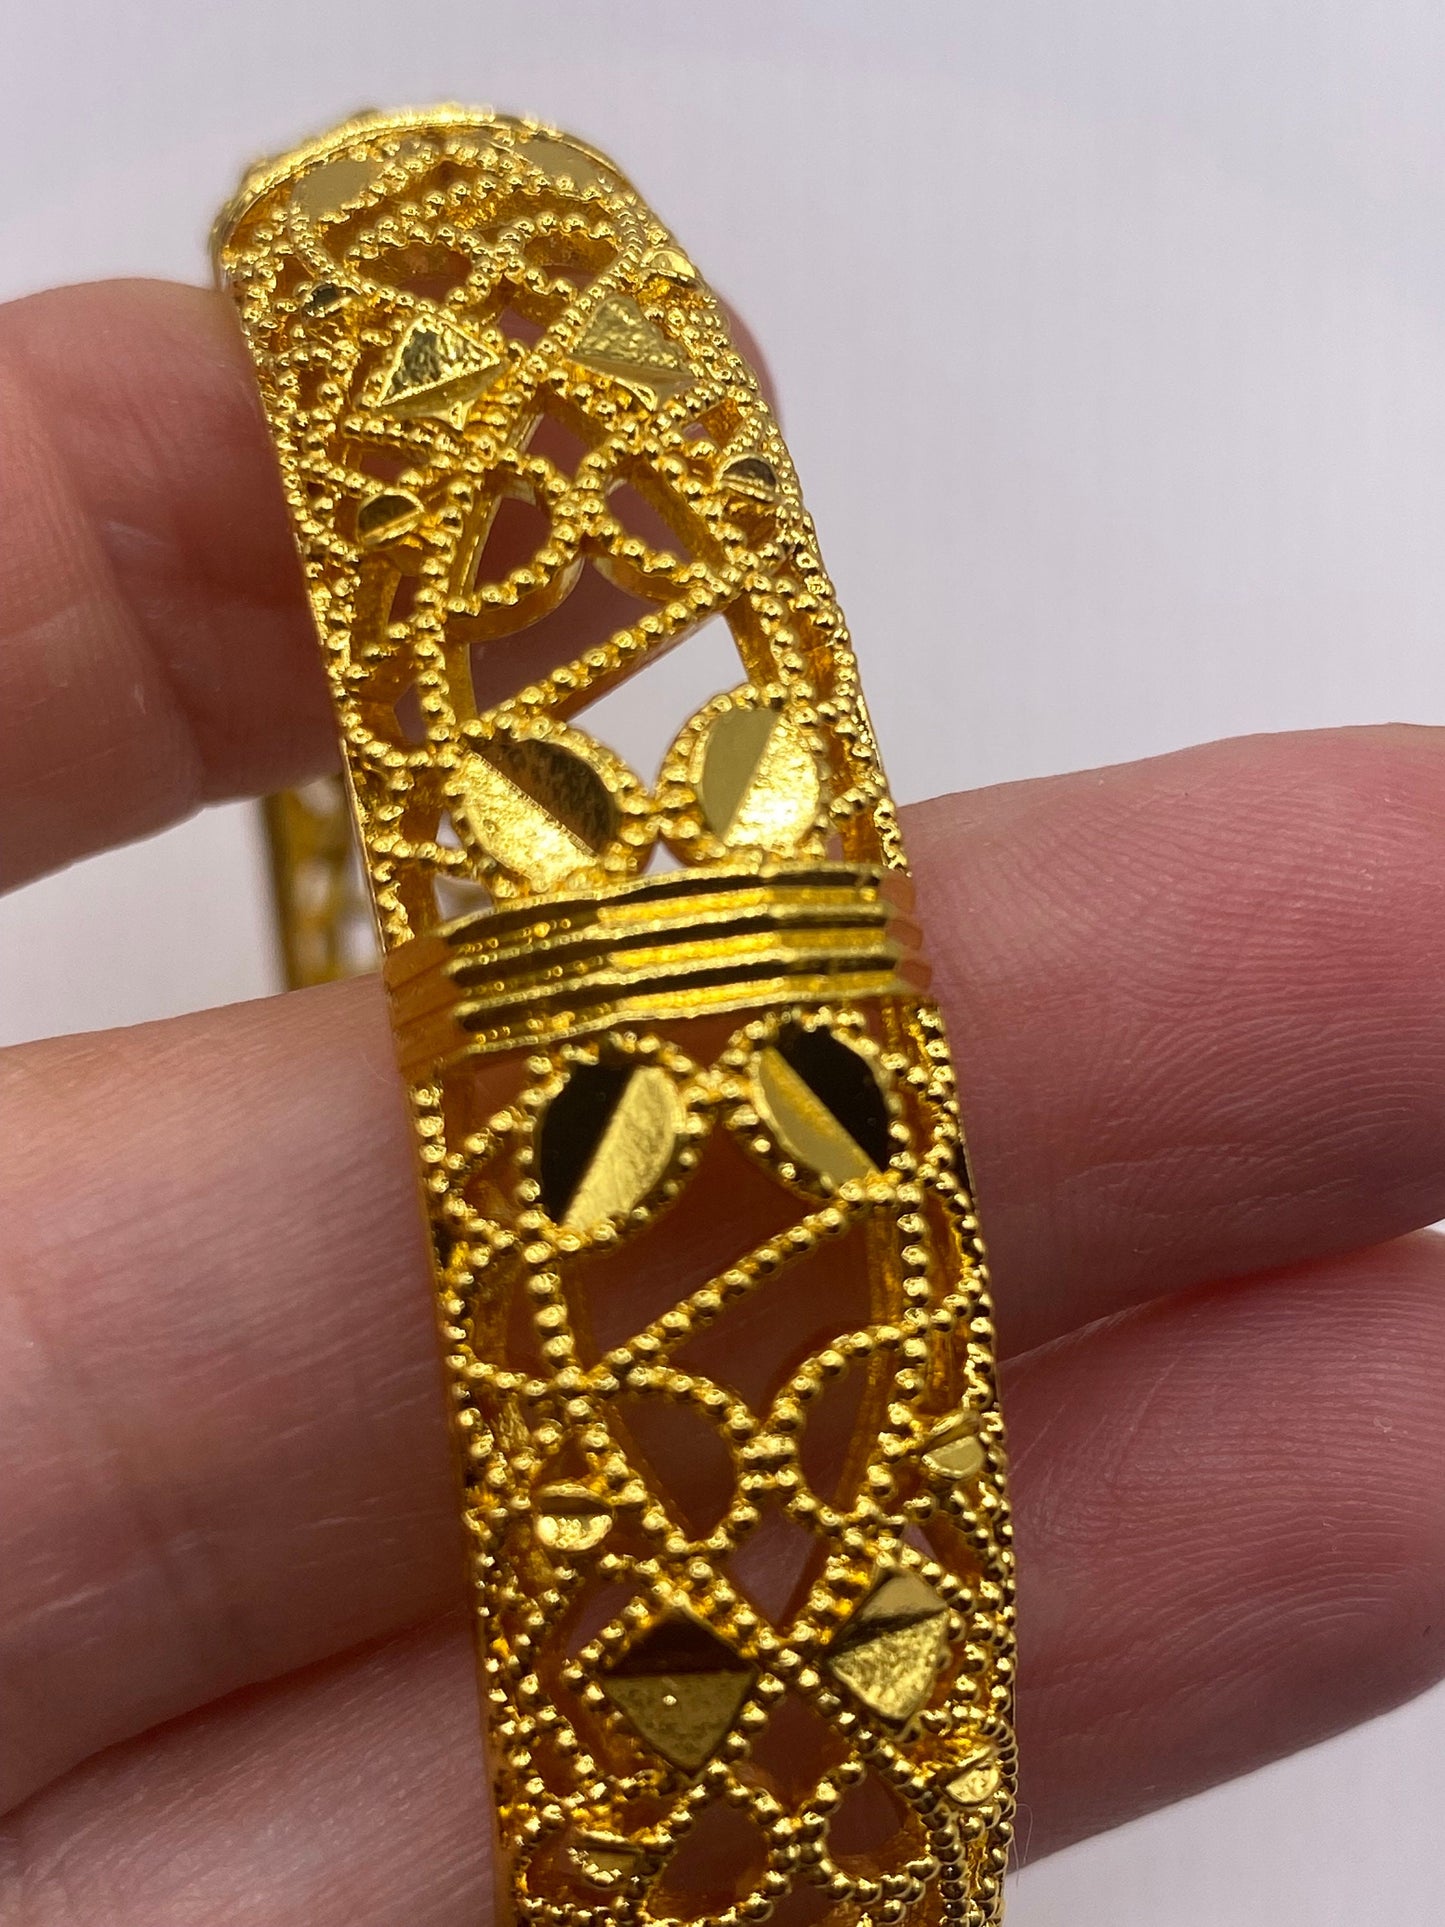 Vintage Bangle Bracelet Golden Bronze filigree